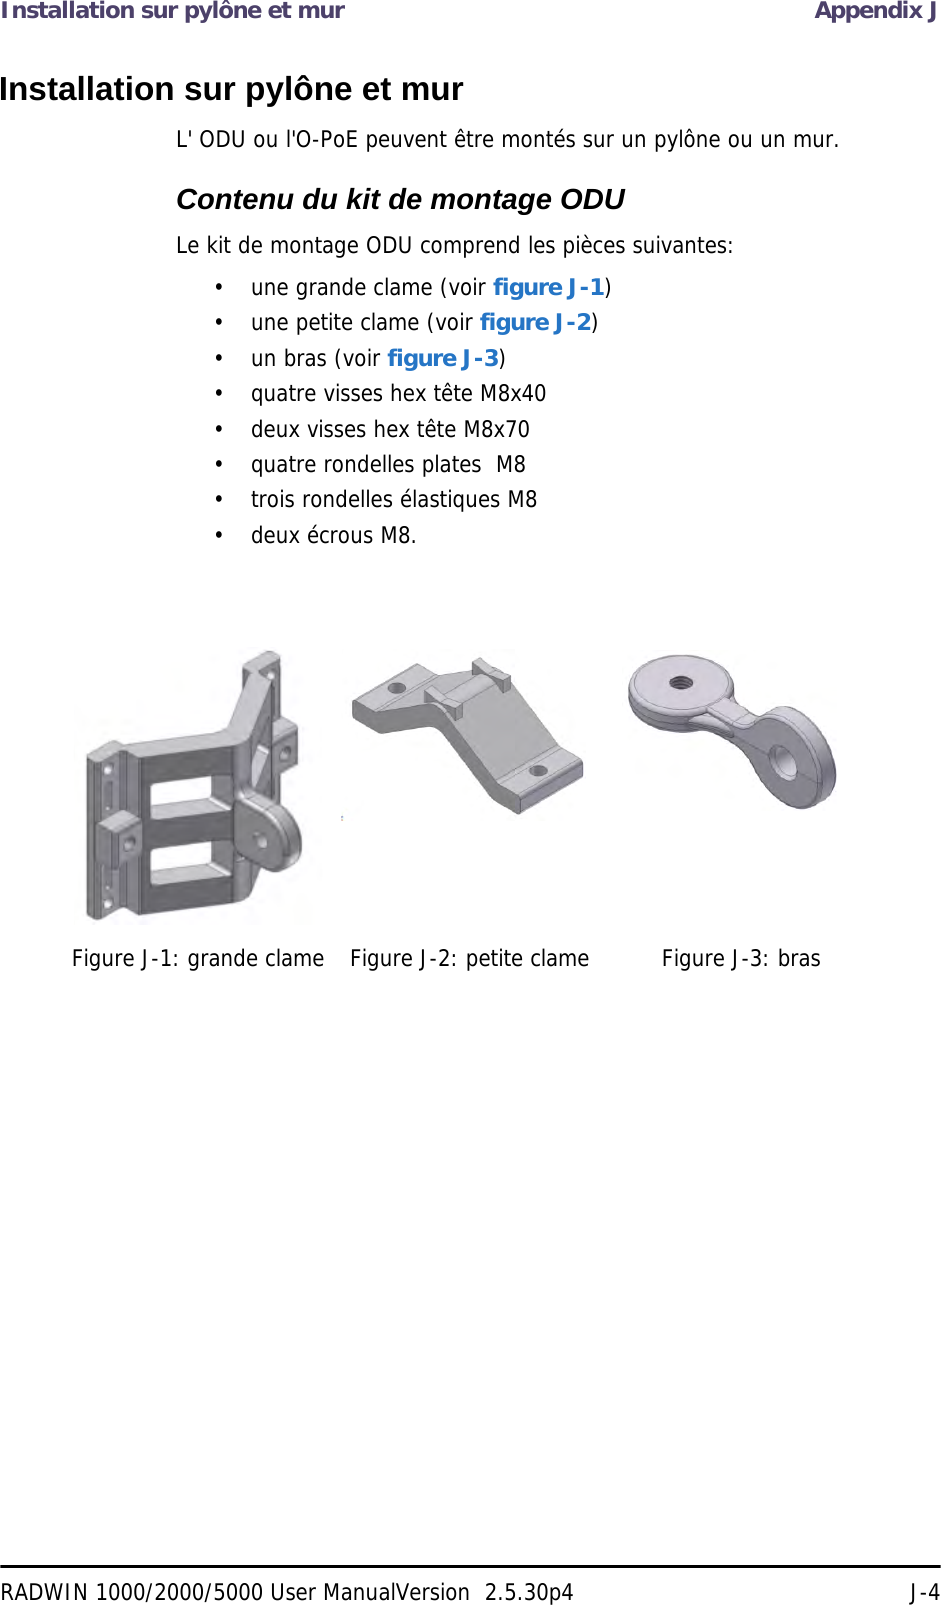 Installation sur pylône et mur Appendix JRADWIN 1000/2000/5000 User ManualVersion  2.5.30p4 J-4Installation sur pylône et murL&apos; ODU ou l&apos;O-PoE peuvent être montés sur un pylône ou un mur.Contenu du kit de montage ODULe kit de montage ODU comprend les pièces suivantes:• une grande clame (voir figure J-1)• une petite clame (voir figure J-2)• un bras (voir figure J-3)• quatre visses hex tête M8x40• deux visses hex tête M8x70• quatre rondelles plates  M8• trois rondelles élastiques M8• deux écrous M8.Figure J-1: grande clame Figure J-2: petite clame Figure J-3: bras